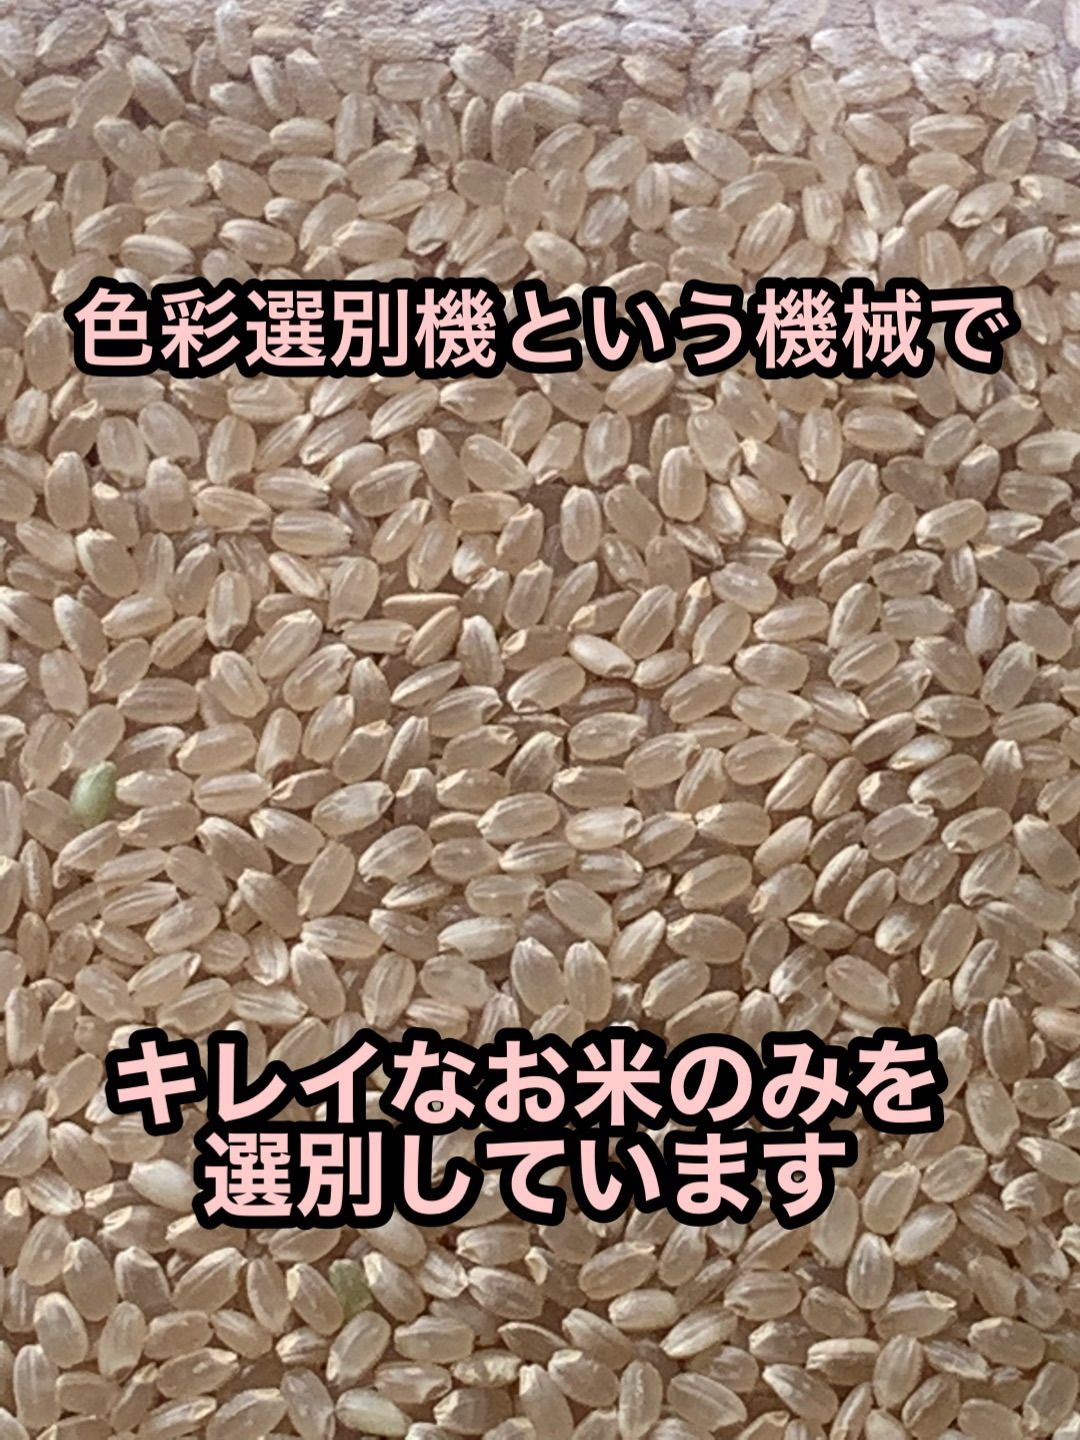 イセヒカリ】玄米10kg 新米 令和4年度兵庫県産 無農薬無施肥の自然栽培